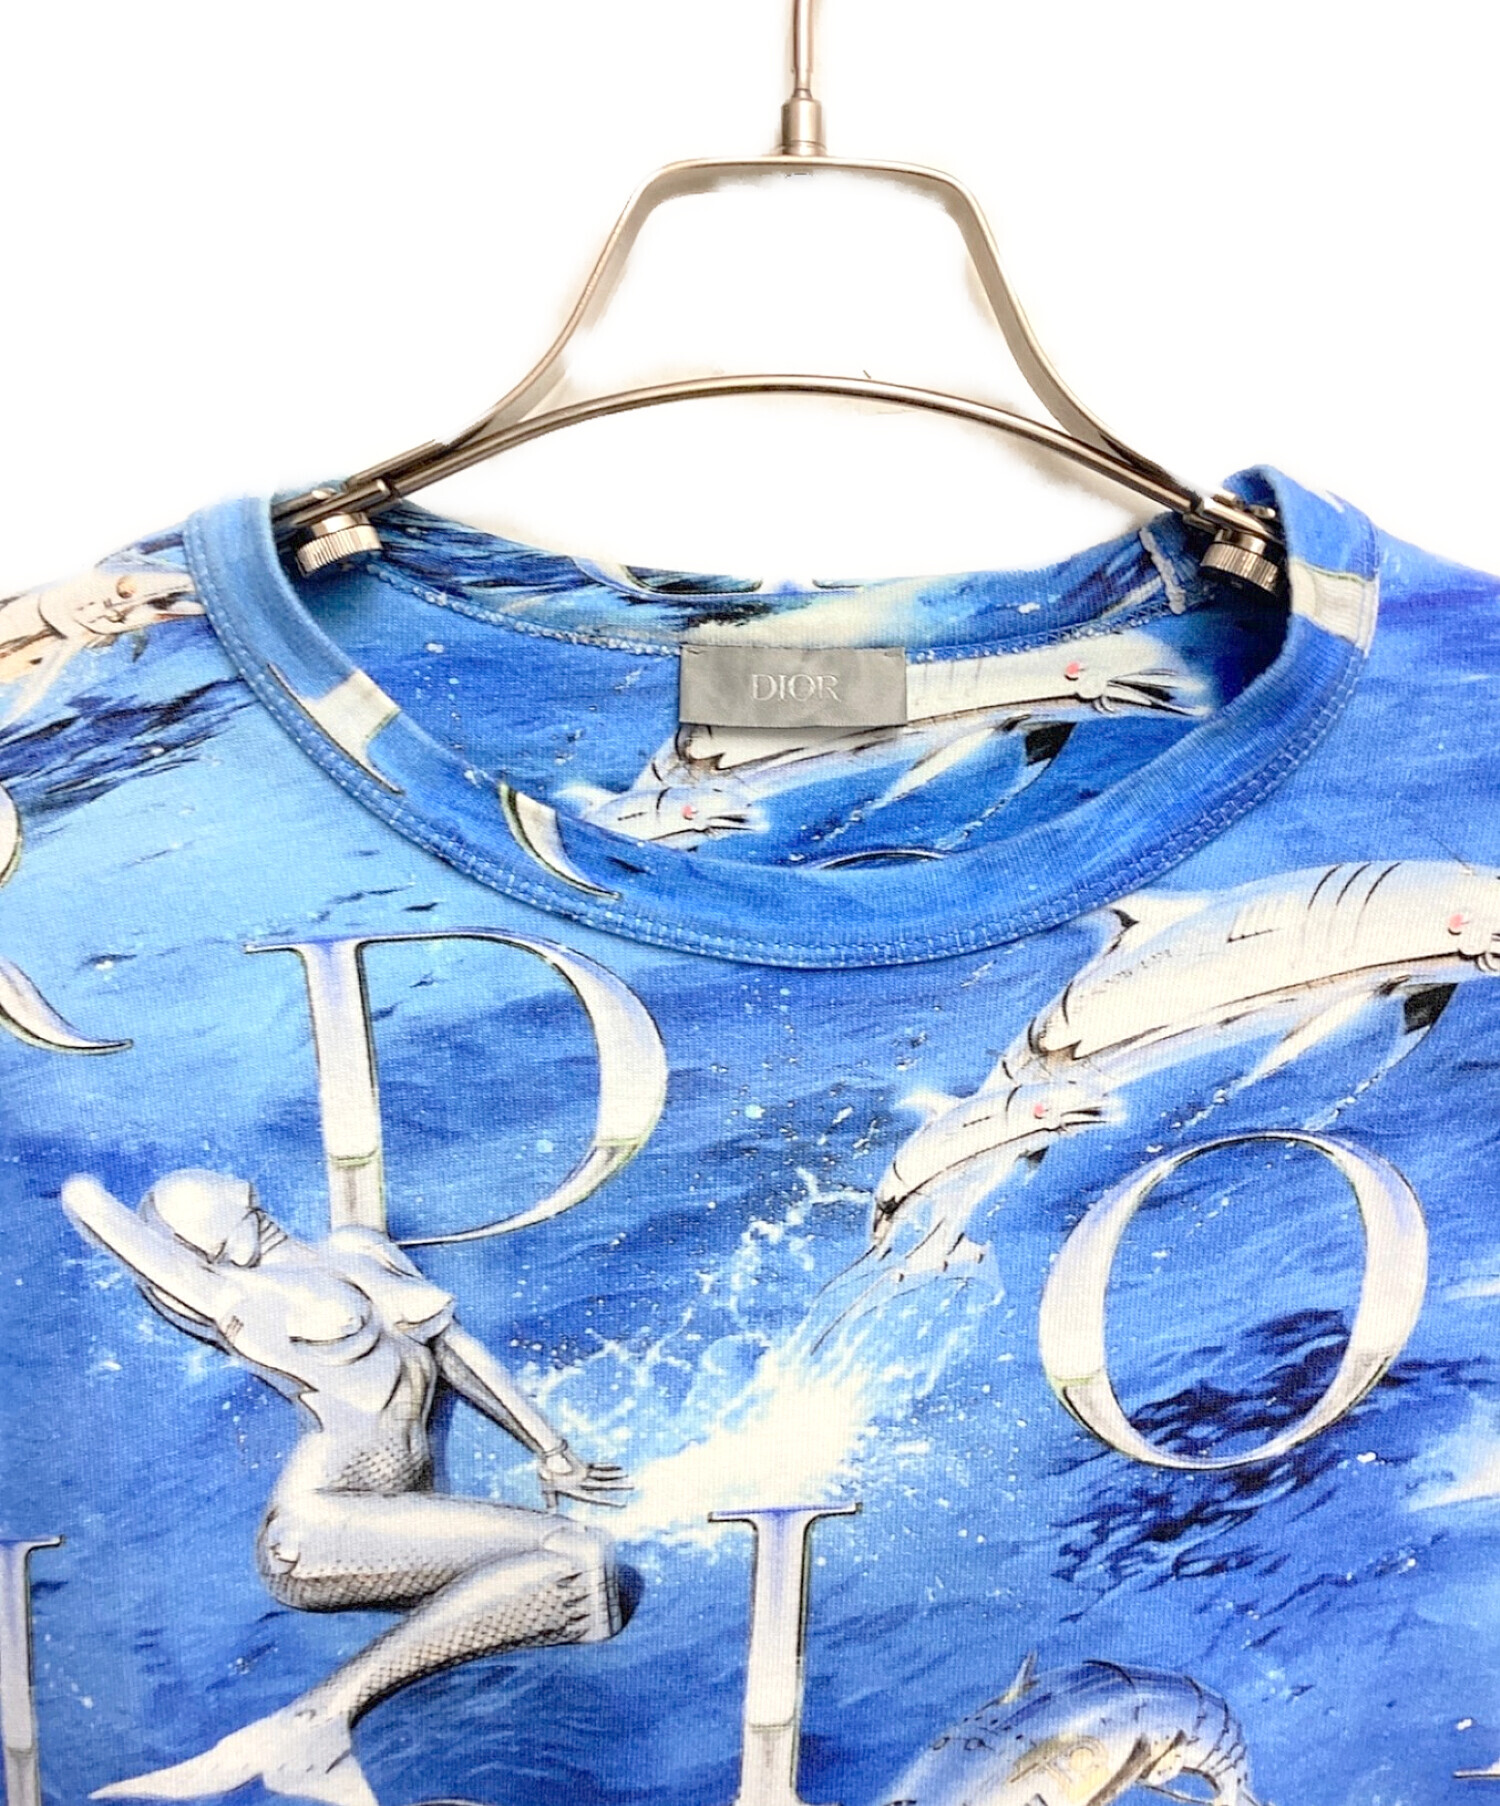 Dior (ディオール) 空山基 (ソラヤマハジメ) ロボットTシャツ ブルー サイズ:S